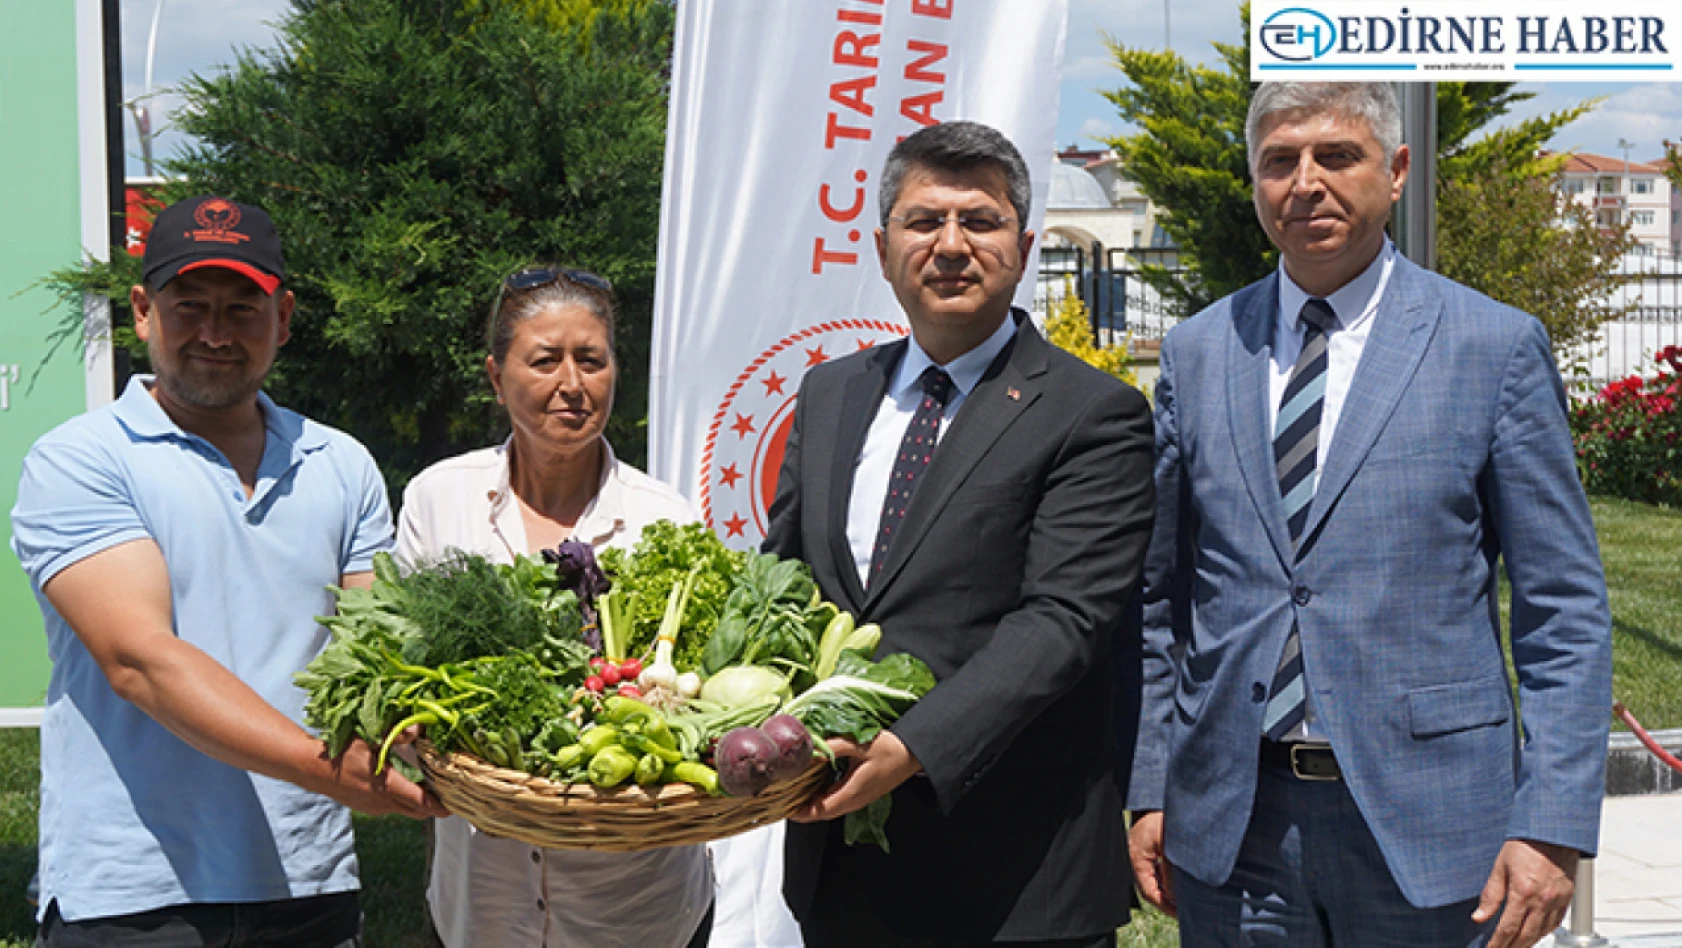 Edirne'de örtü altı tarım yaygınlaştırılacak